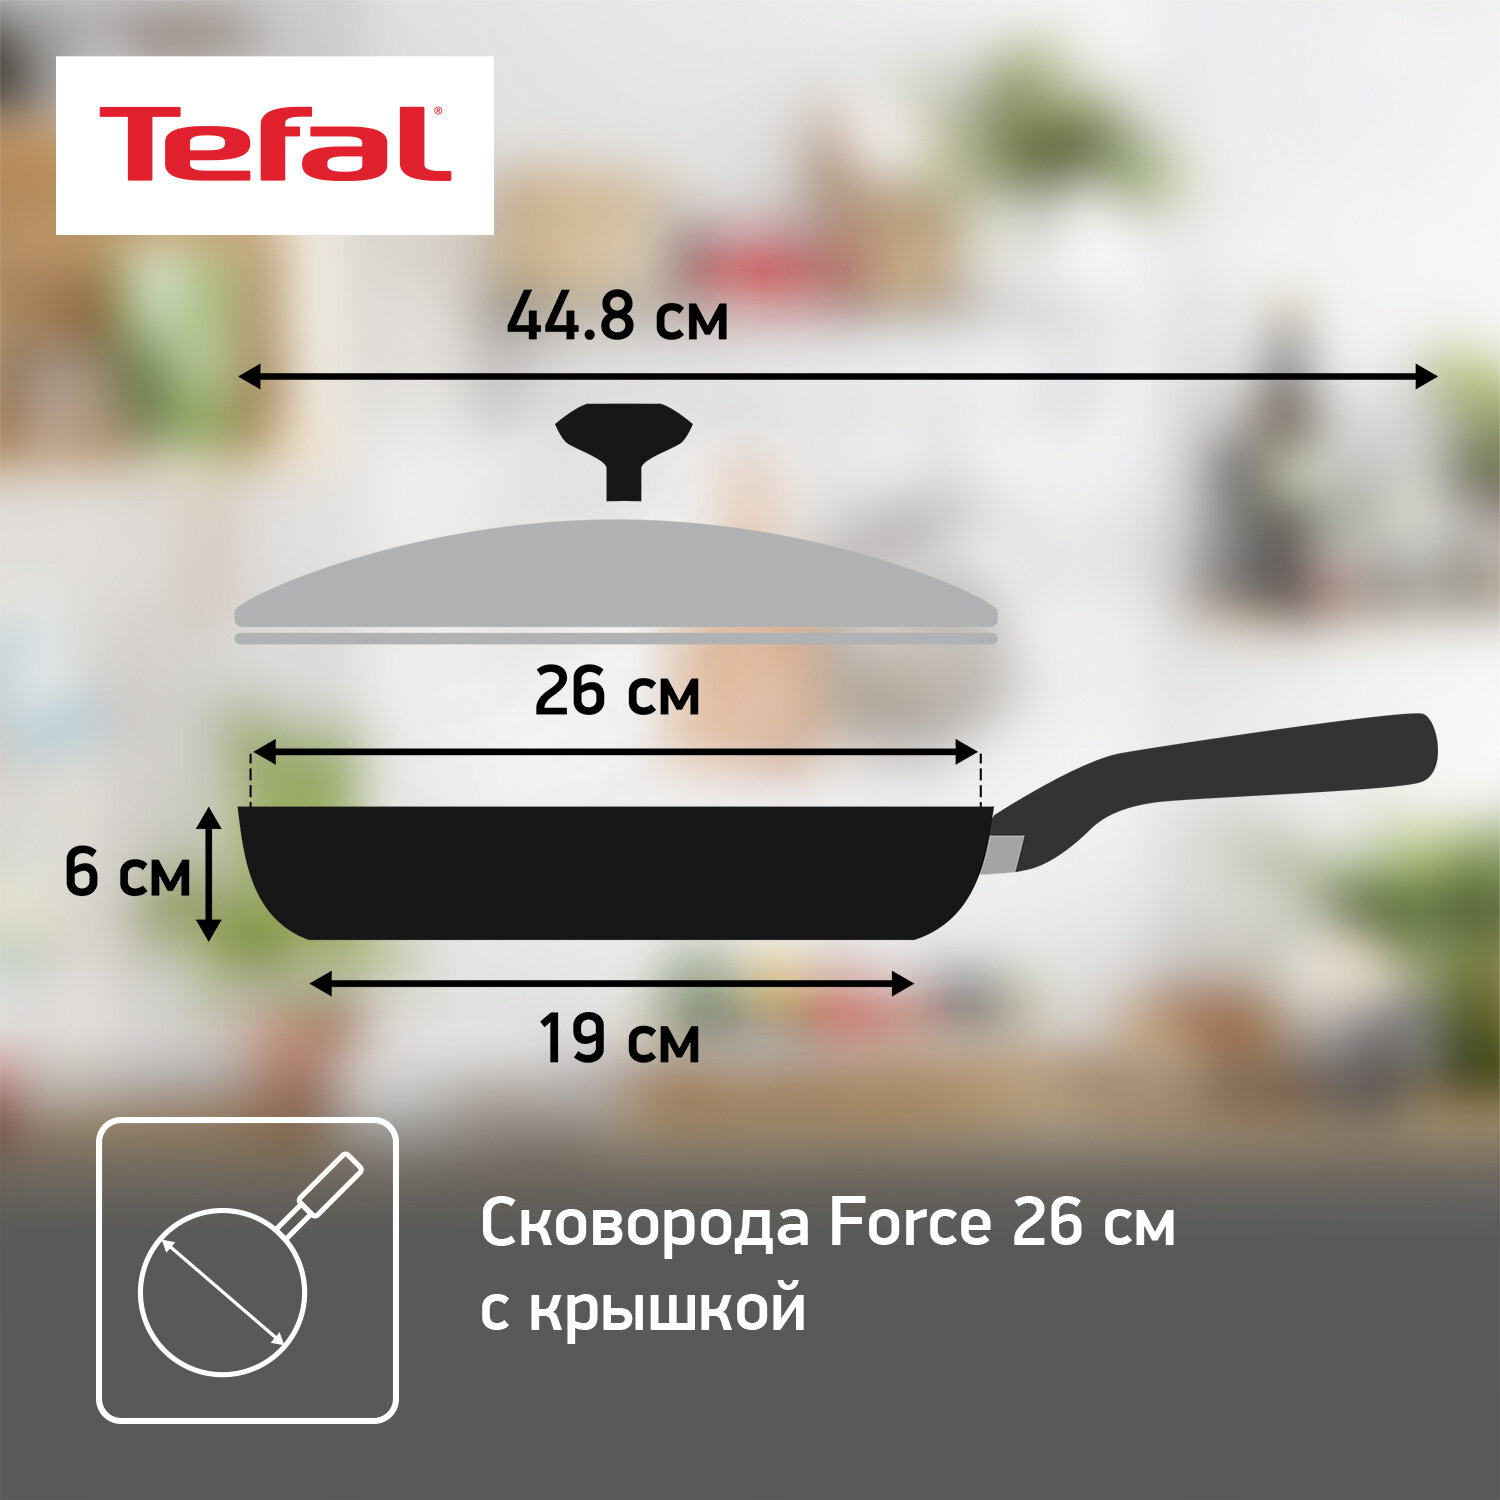 Сковорода Tefal Force 26 cм с крышкой 04218926